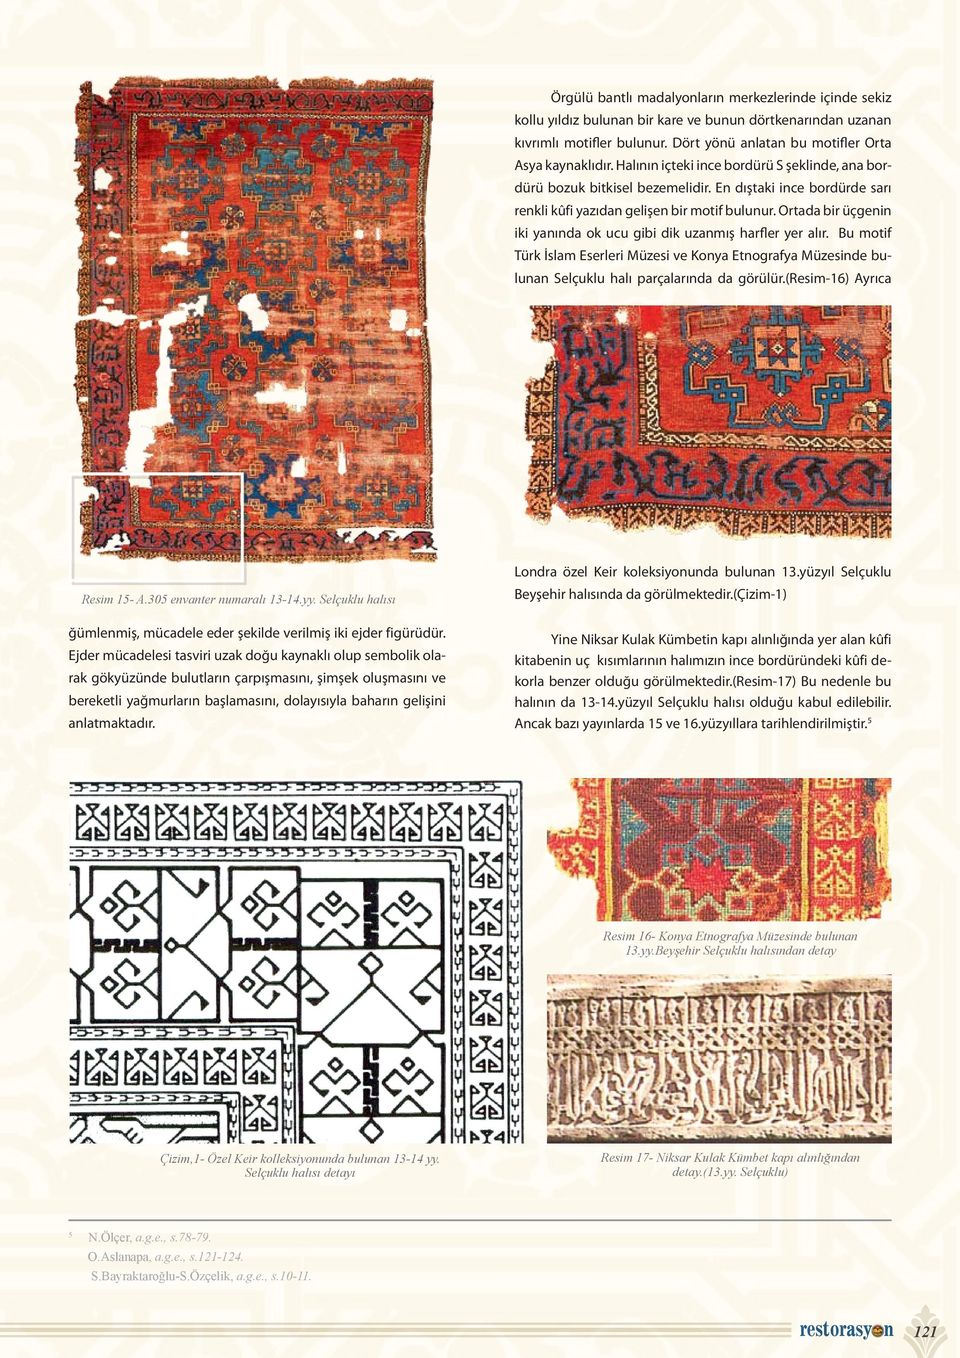 Ortada bir üçgenin iki yanında ok ucu gibi dik uzanmış harfler yer alır. Bu motif Türk İslam Eserleri Müzesi ve Konya Etnografya Müzesinde bulunan Selçuklu halı parçalarında da görülür.